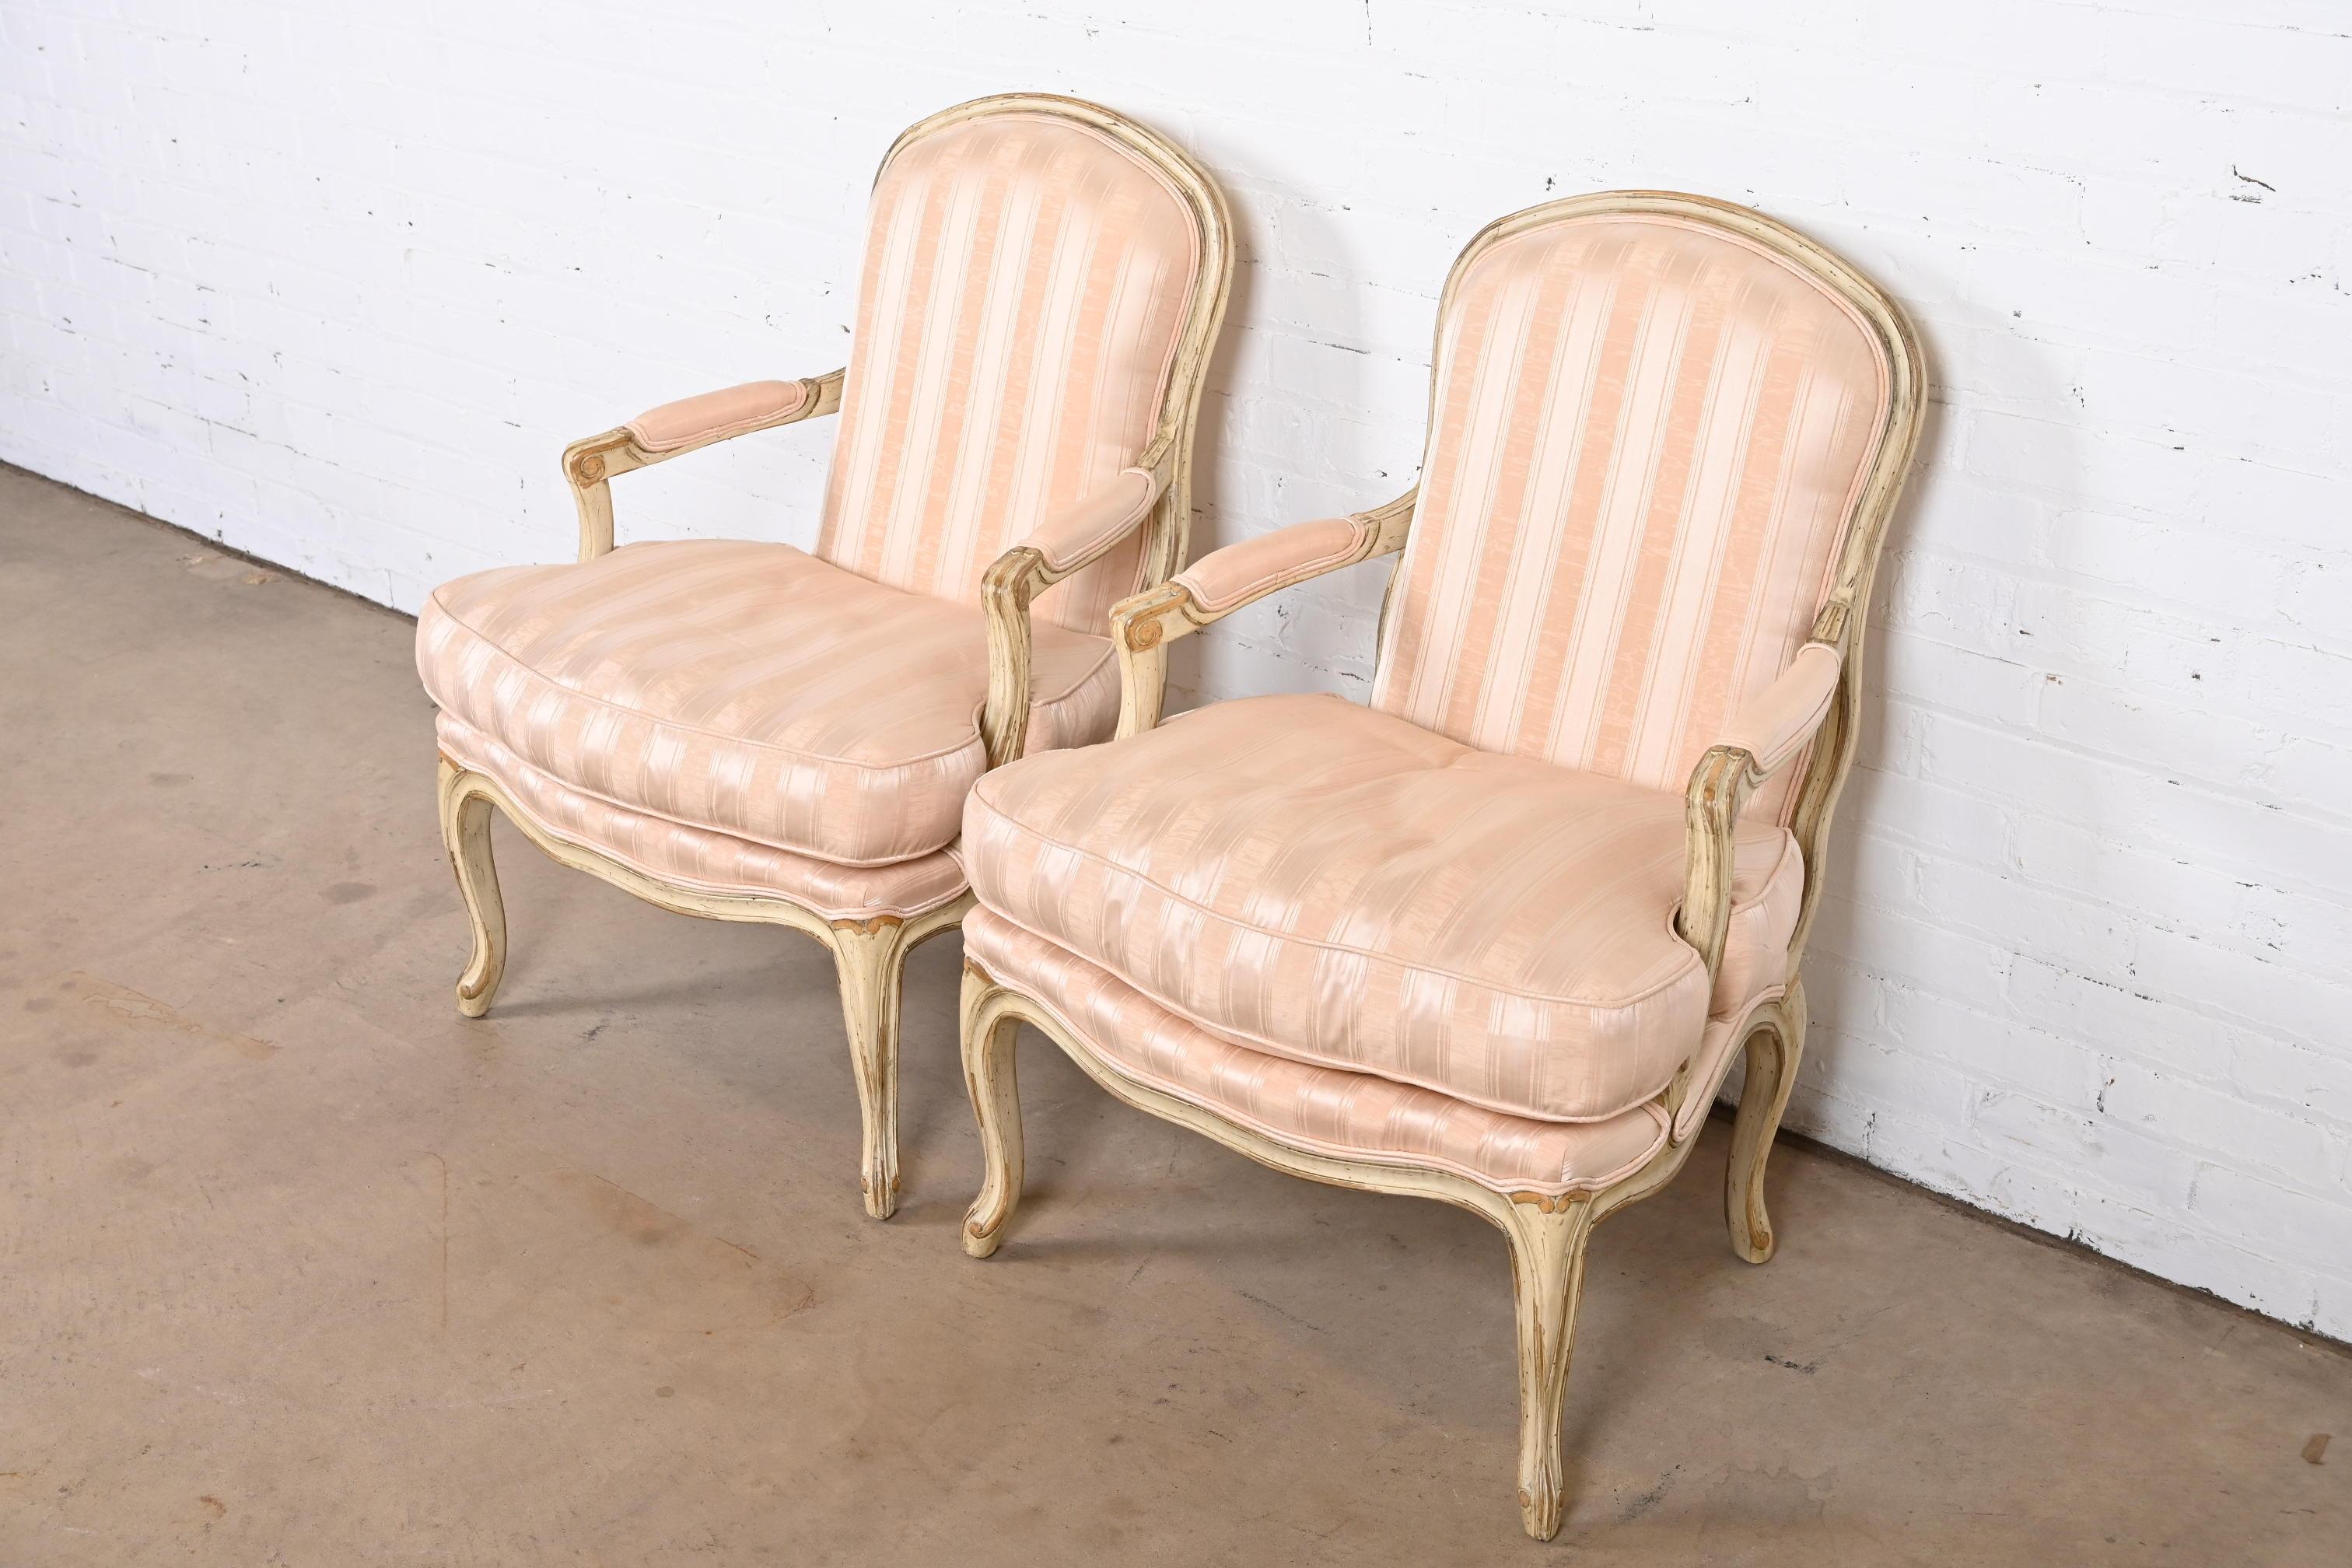 Une superbe paire de chaises longues tapissées de style Louis XV, de style provincial français.

Par Baker Furniture

États-Unis, fin du 20e siècle

Cadres en noyer peint sculpté, avec sièges et dossiers rembourrés à rayures roses.

Mesures